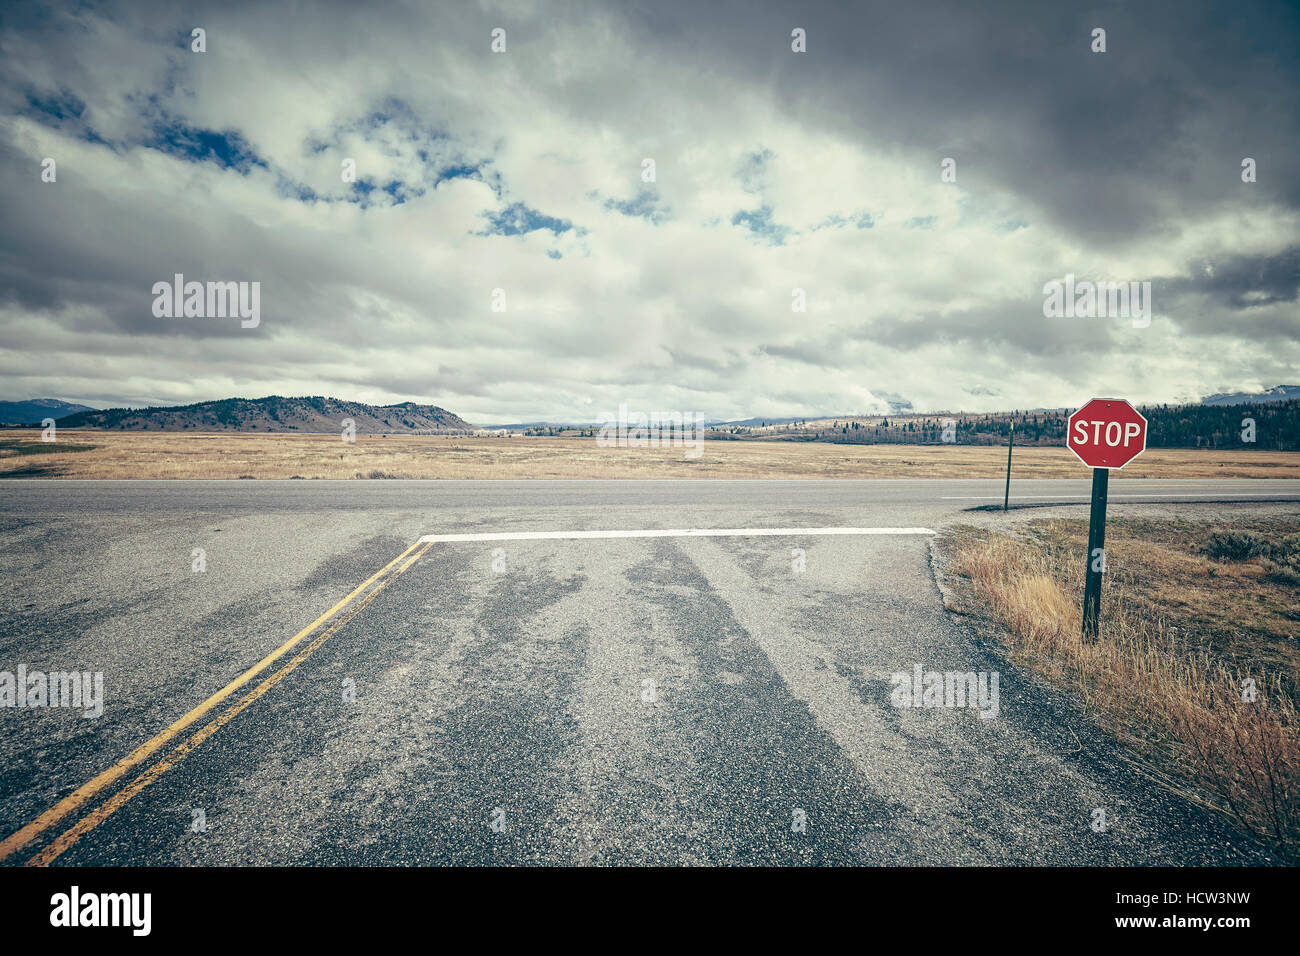 Retro stilisierte Straße Kreuzung mit Stoppschild an einem bewölkten Tag, Darstellung, USA. Stockfoto